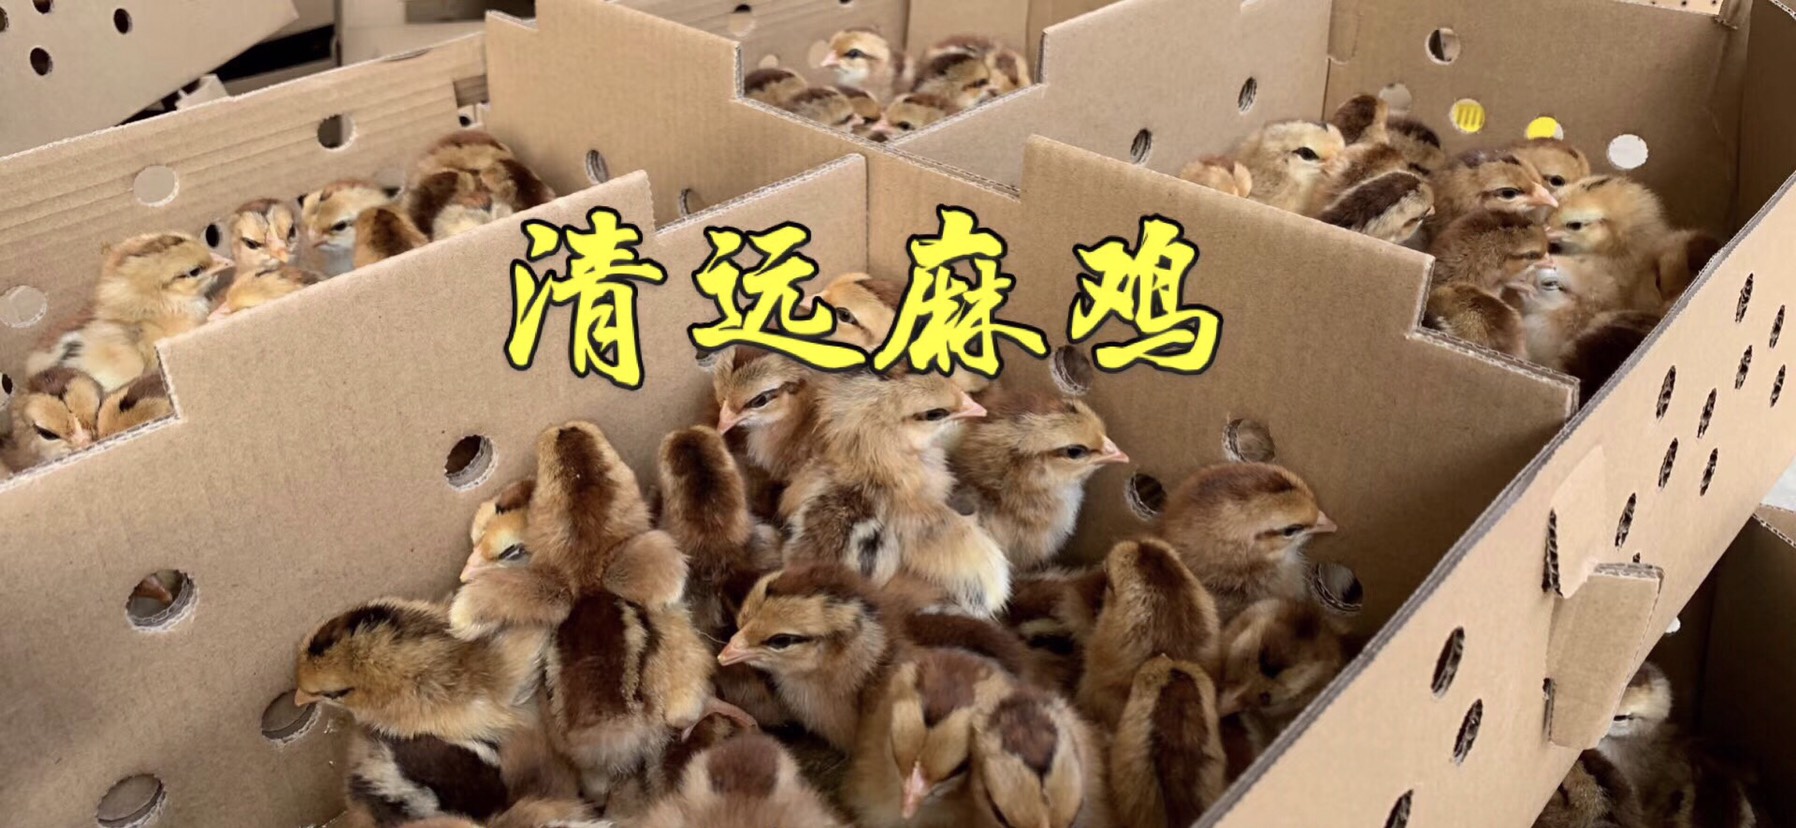 广州清远麻鸡苗 温氏麻鸡苗包打疫苗 包运输草原红鸡苗